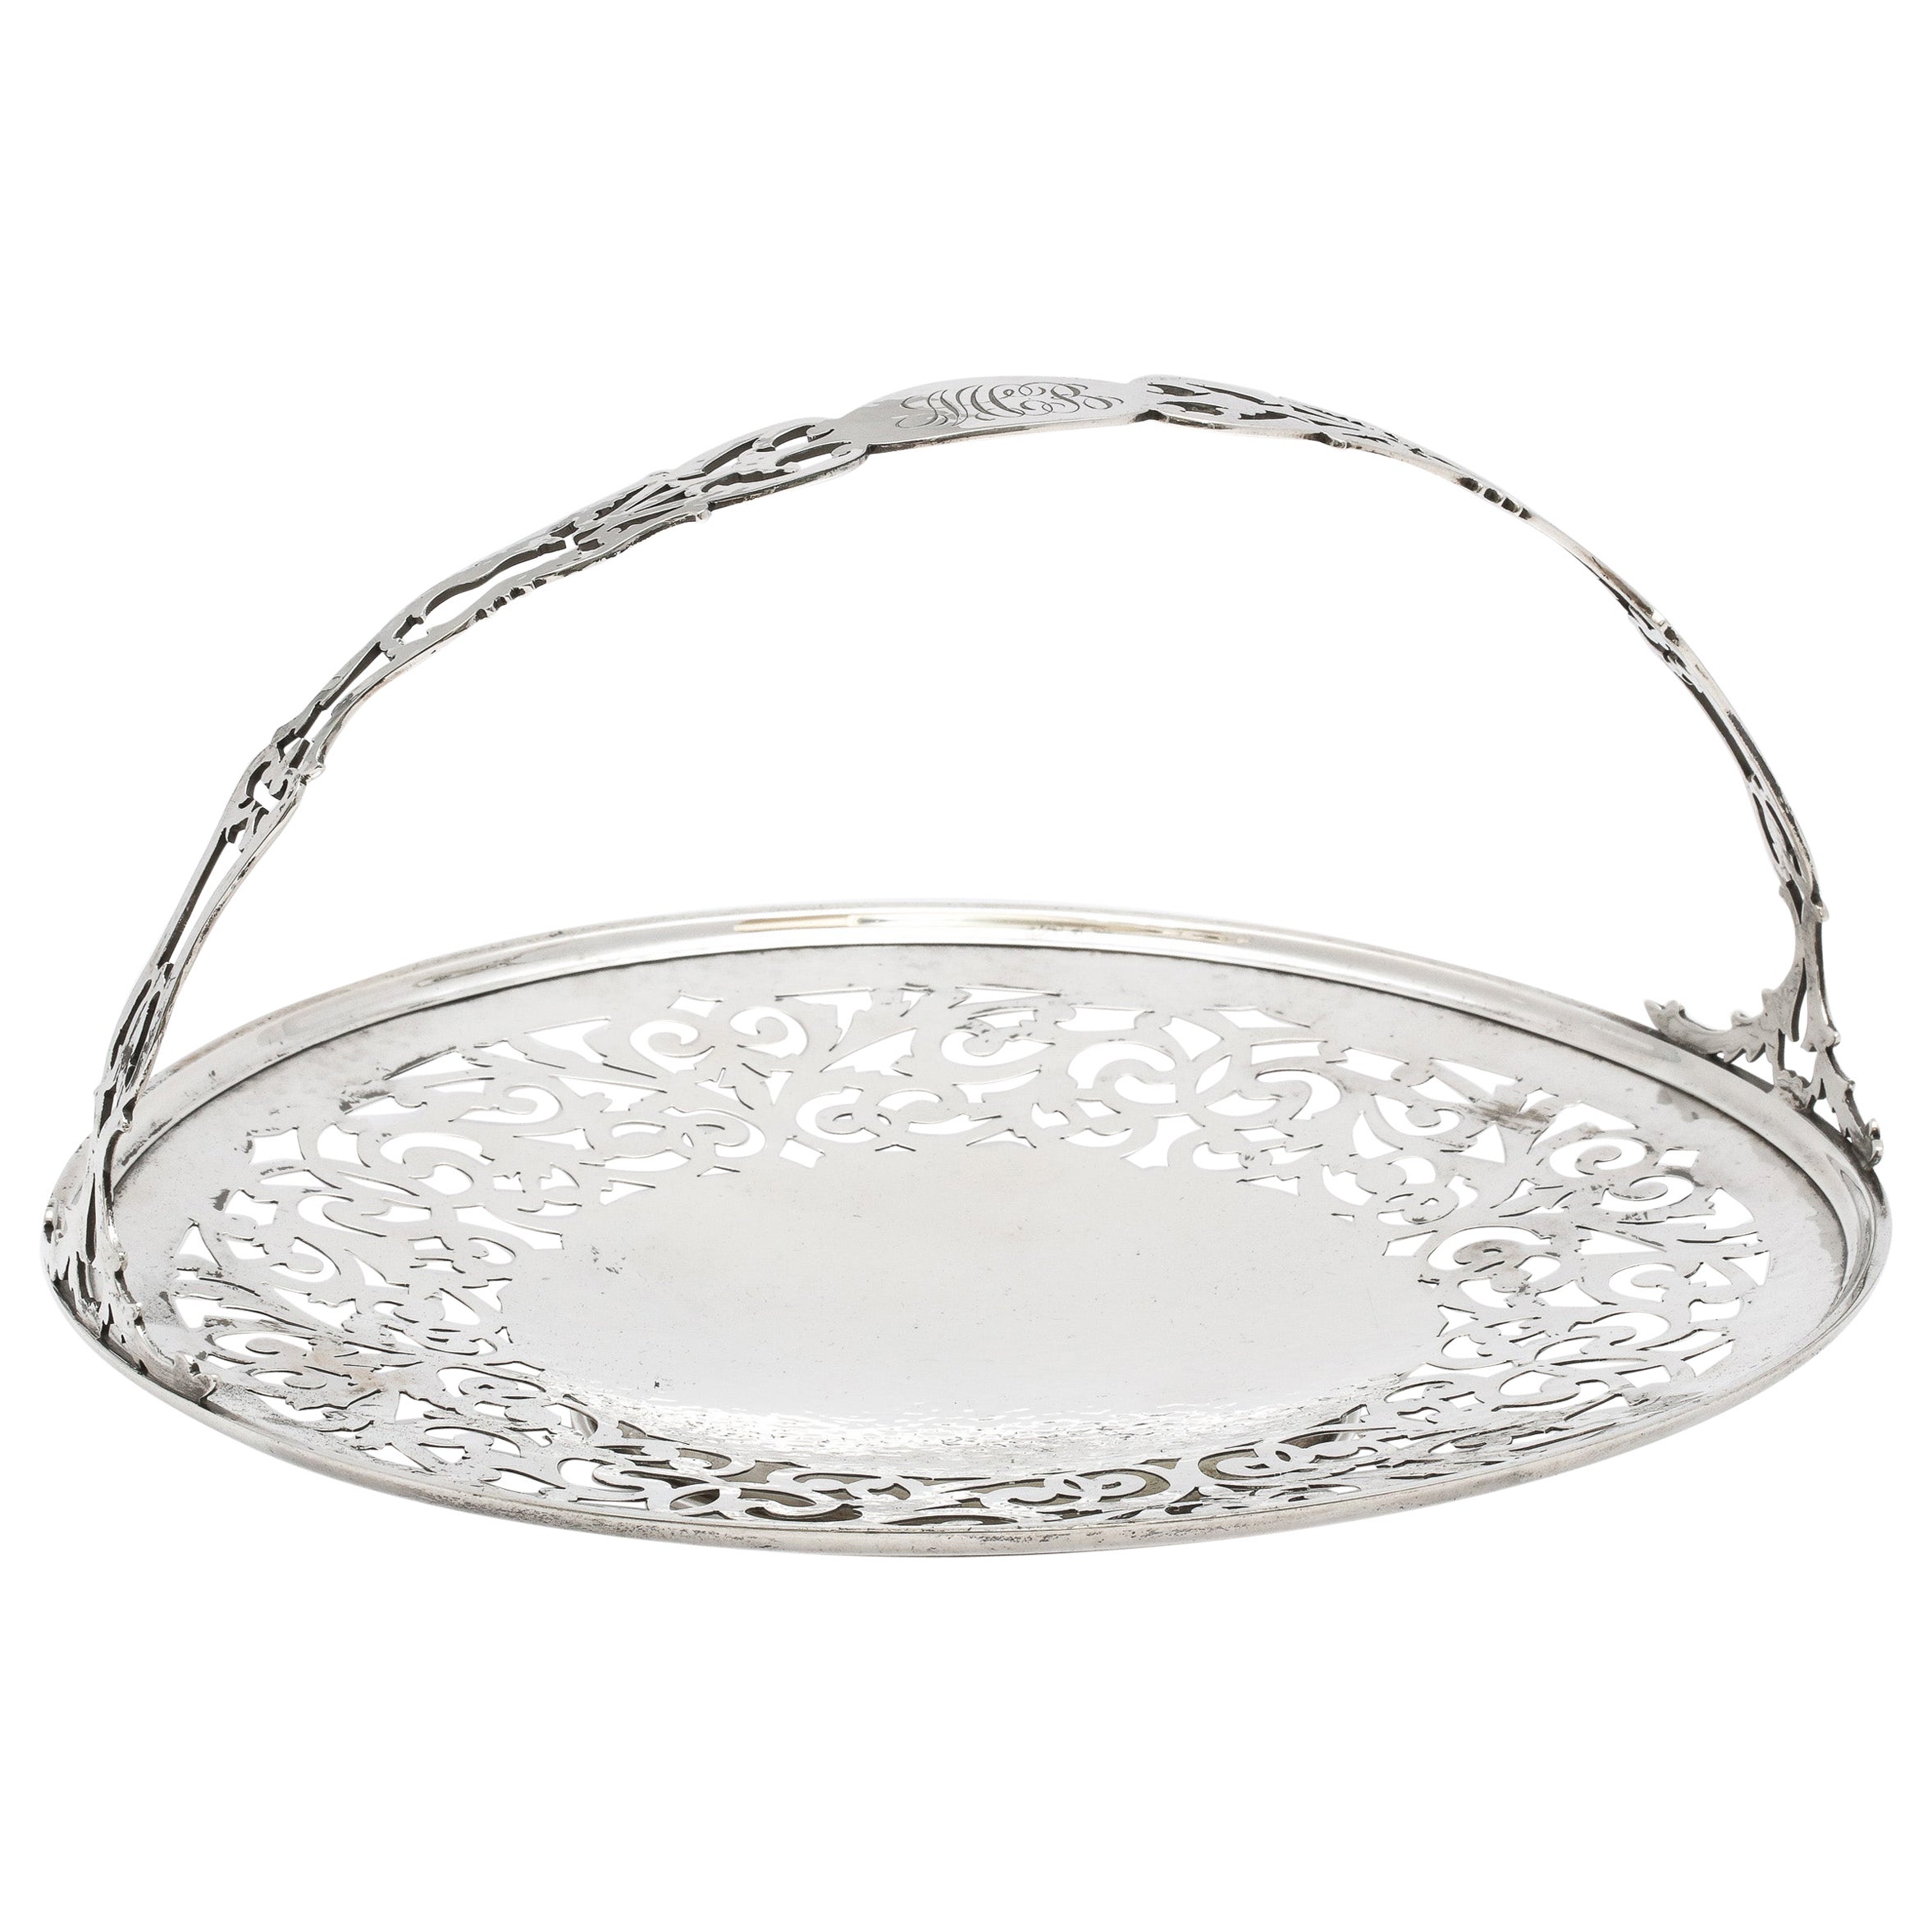 Art Nouveau Sterling Silver Pedestal Based Pierced Cake/Cookie Basket/Platter